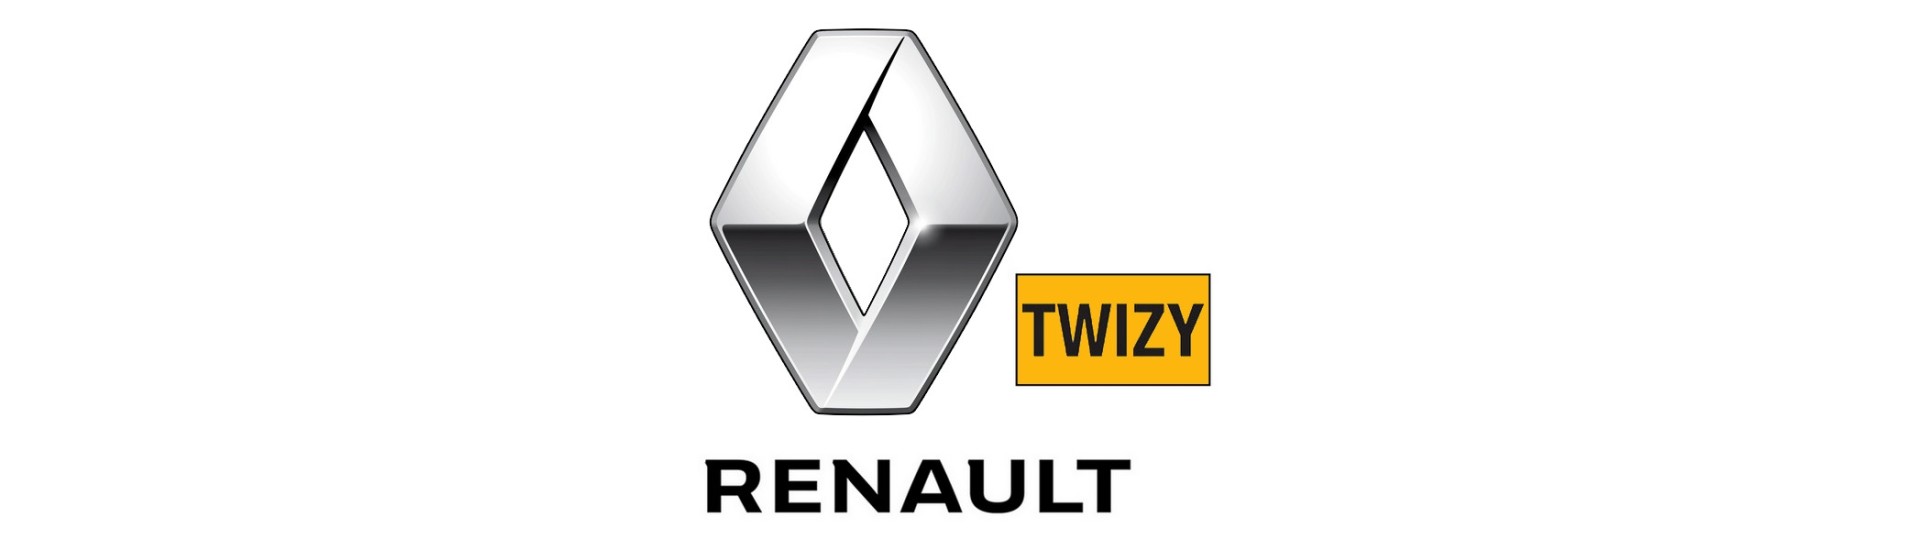 Sähkönvalmistaja parhaalla hinnalla ilman lupaa Renault Twizy